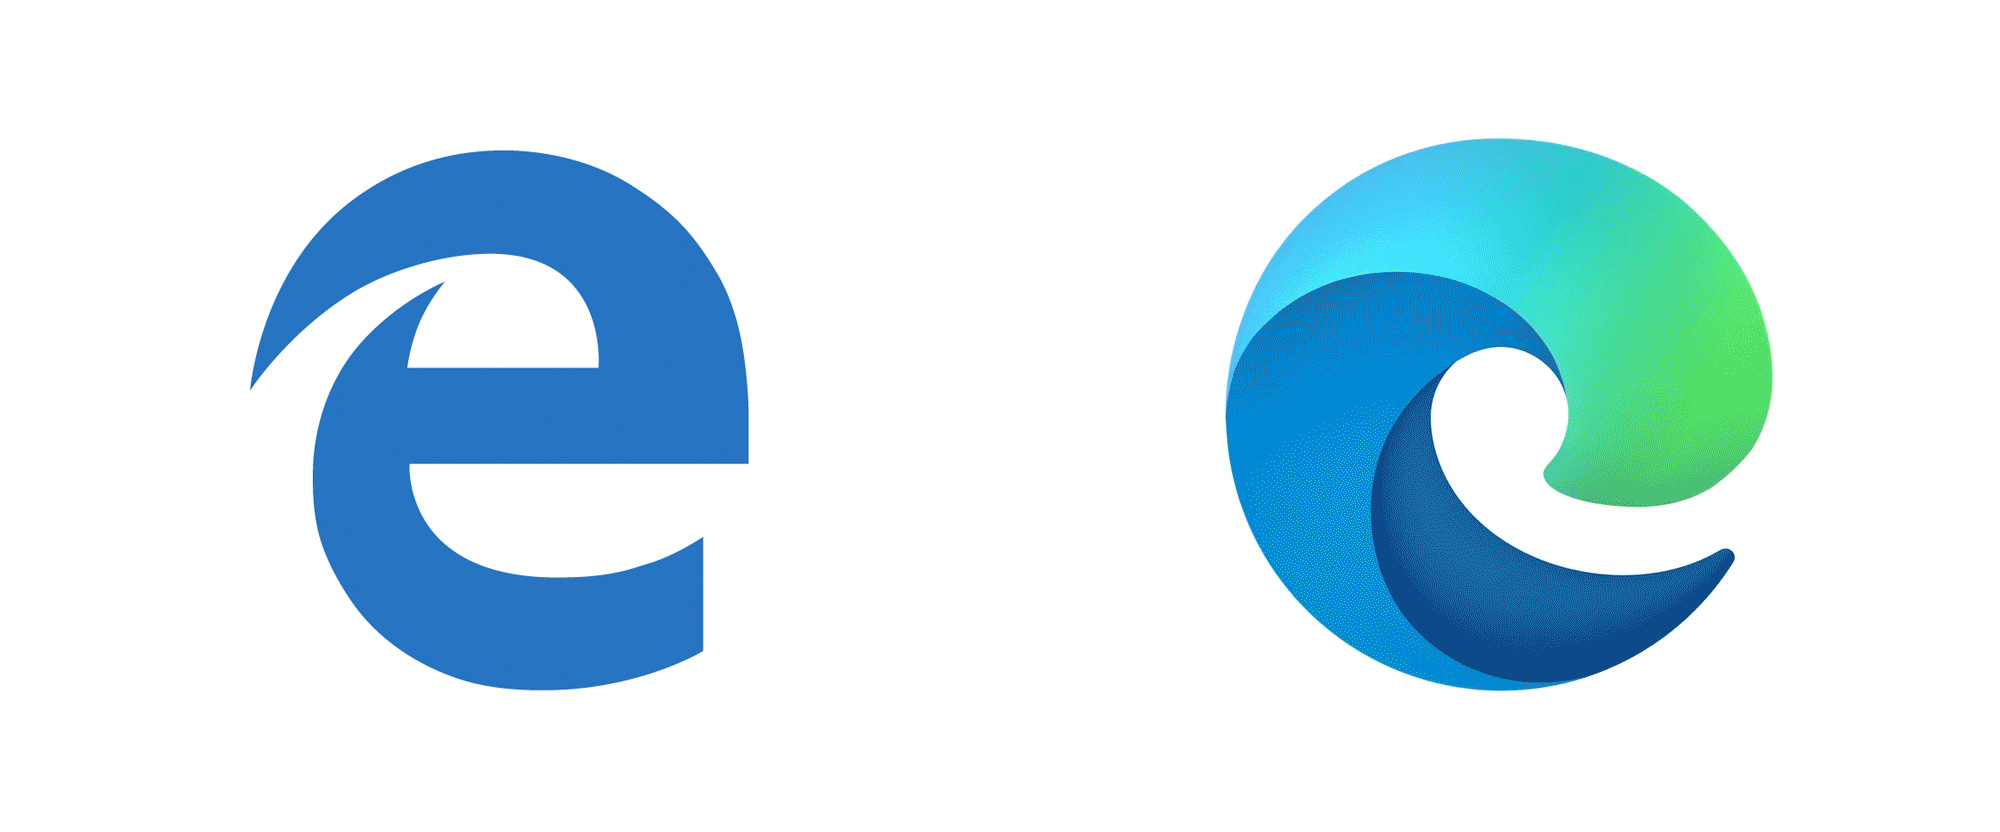 Microsoft Edge Logo Animation 2019 Youtube - Riset